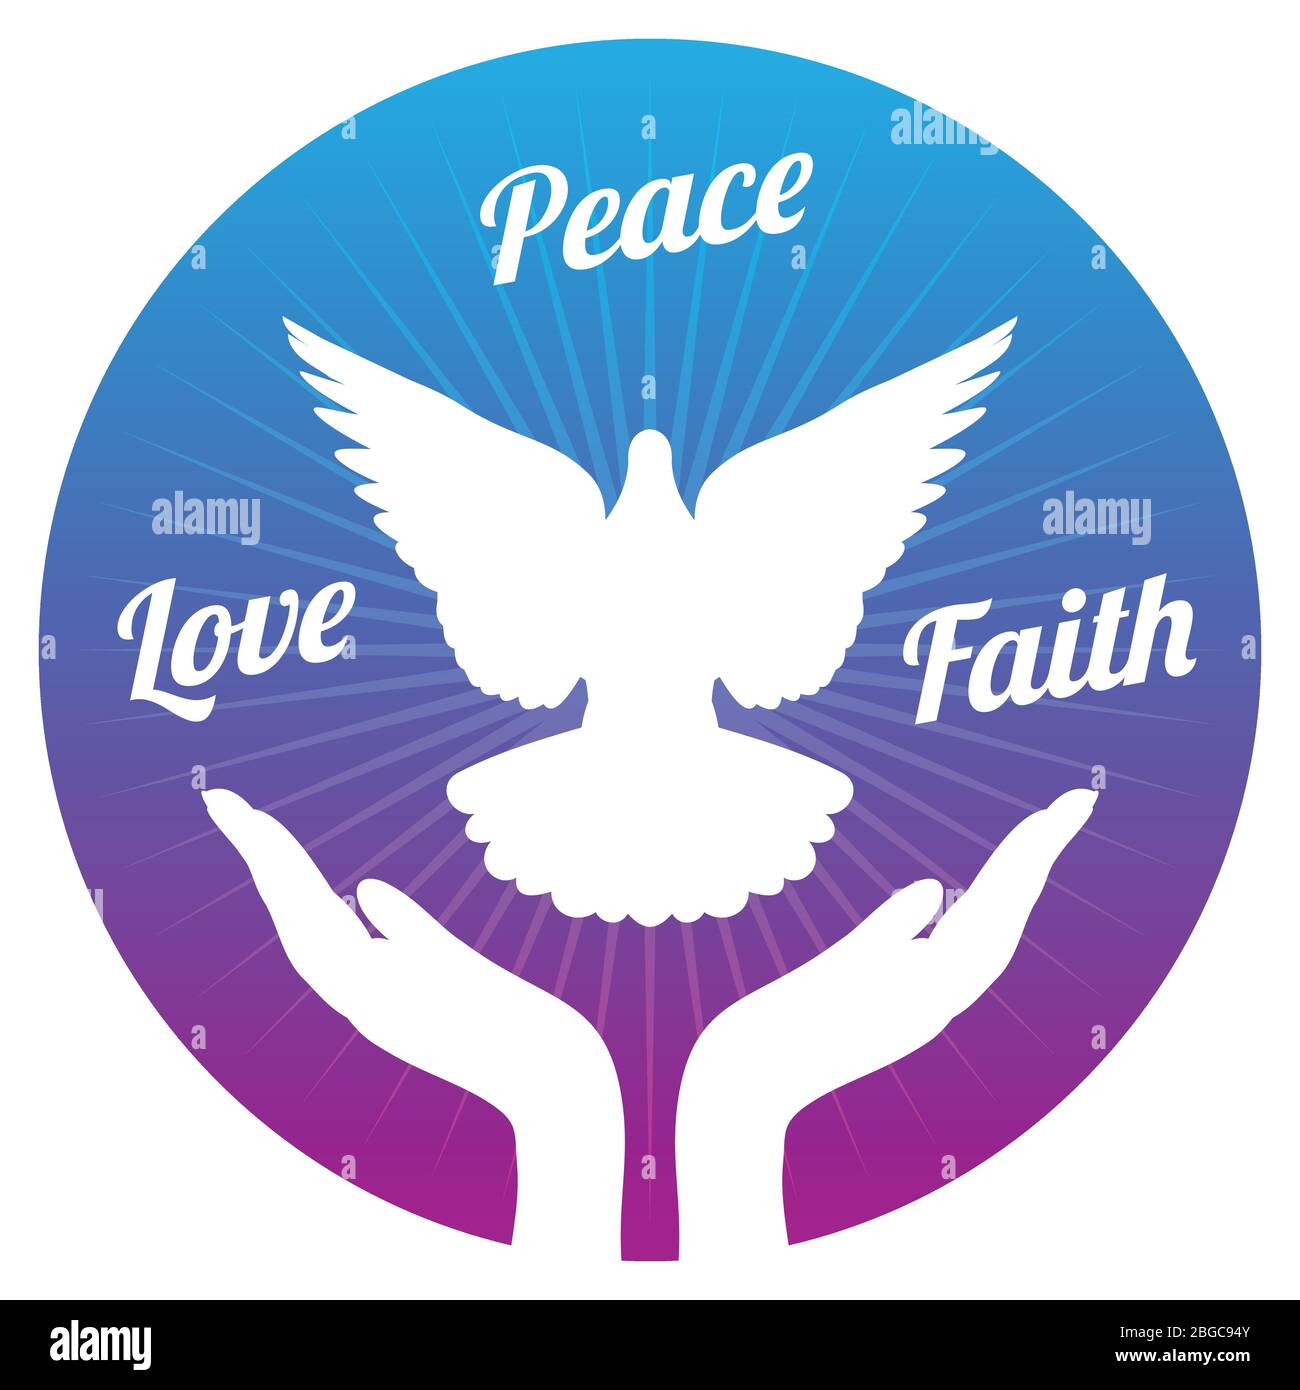 Taube Frieden fliegen aus Händen in den Himmel. Liebe, Freiheit und Religion Glauben Vektor Konzept. Frieden und Liebe, Glaube und Hoffnung Illustration Stock Vektor